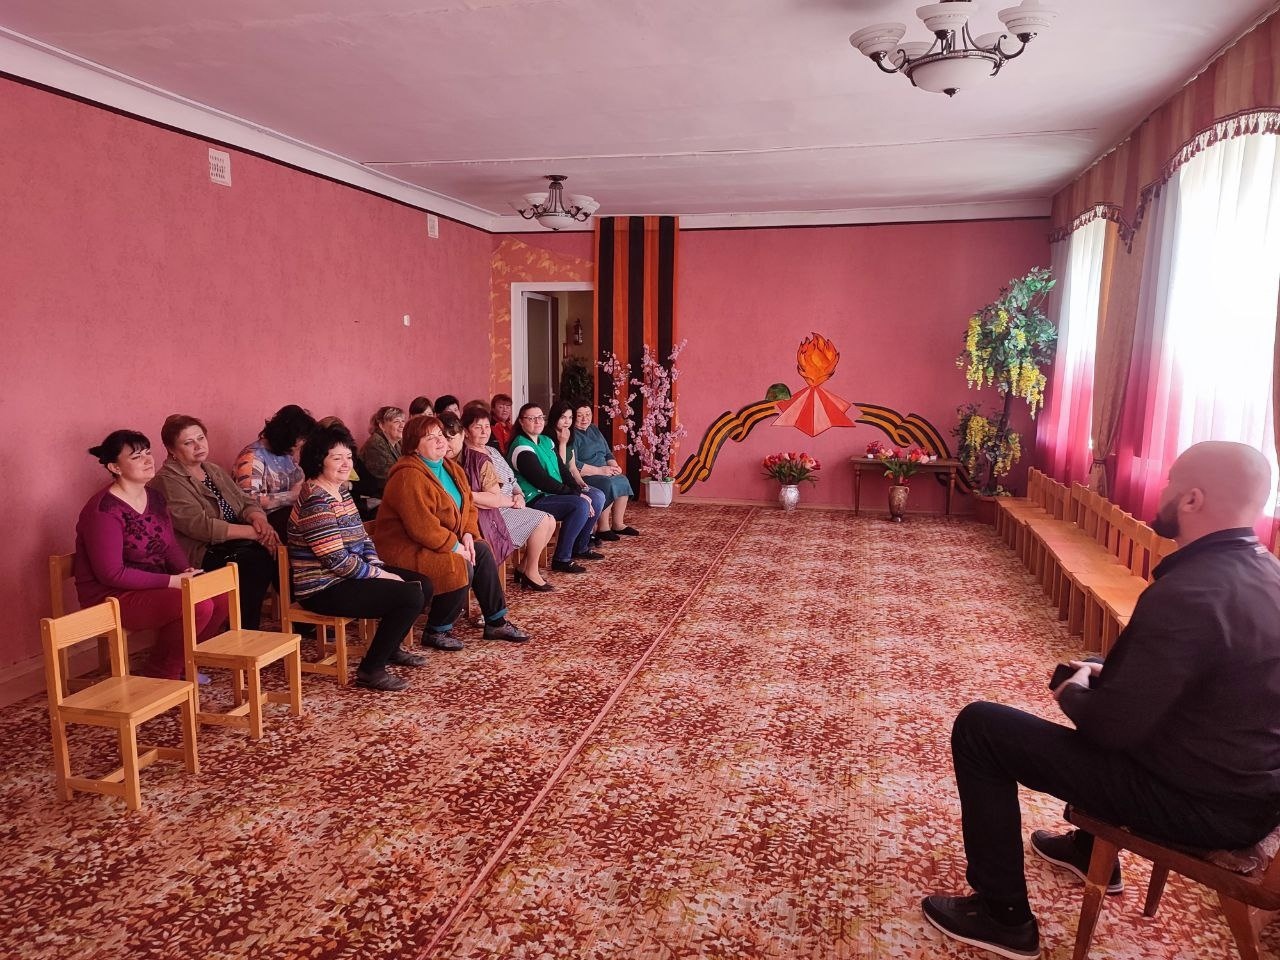 Представители администрации Центрально-Городского района города Горловка и активисты МО ОД «ДР» провели встречу с населением на подведомственной территории.